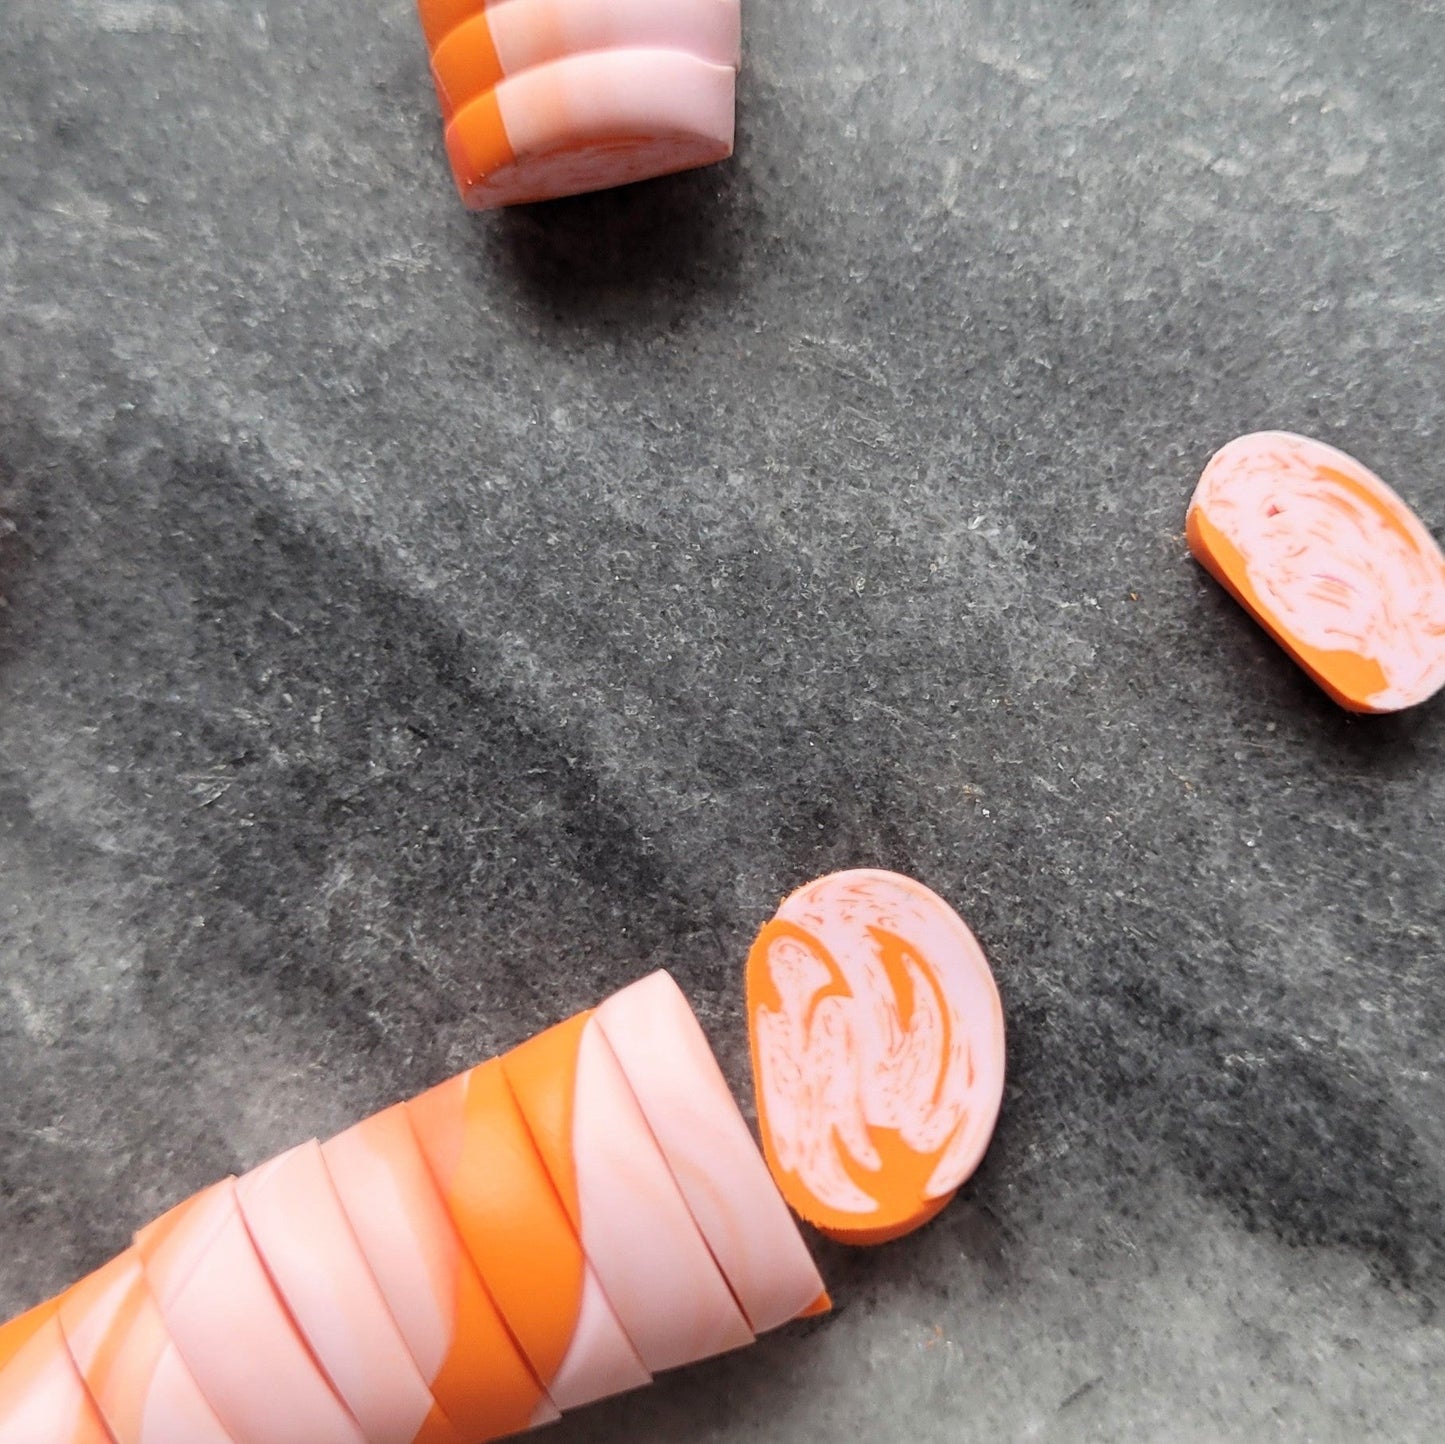 Creolenanhänger aus Ton in rosa und orange - 90s Vibes